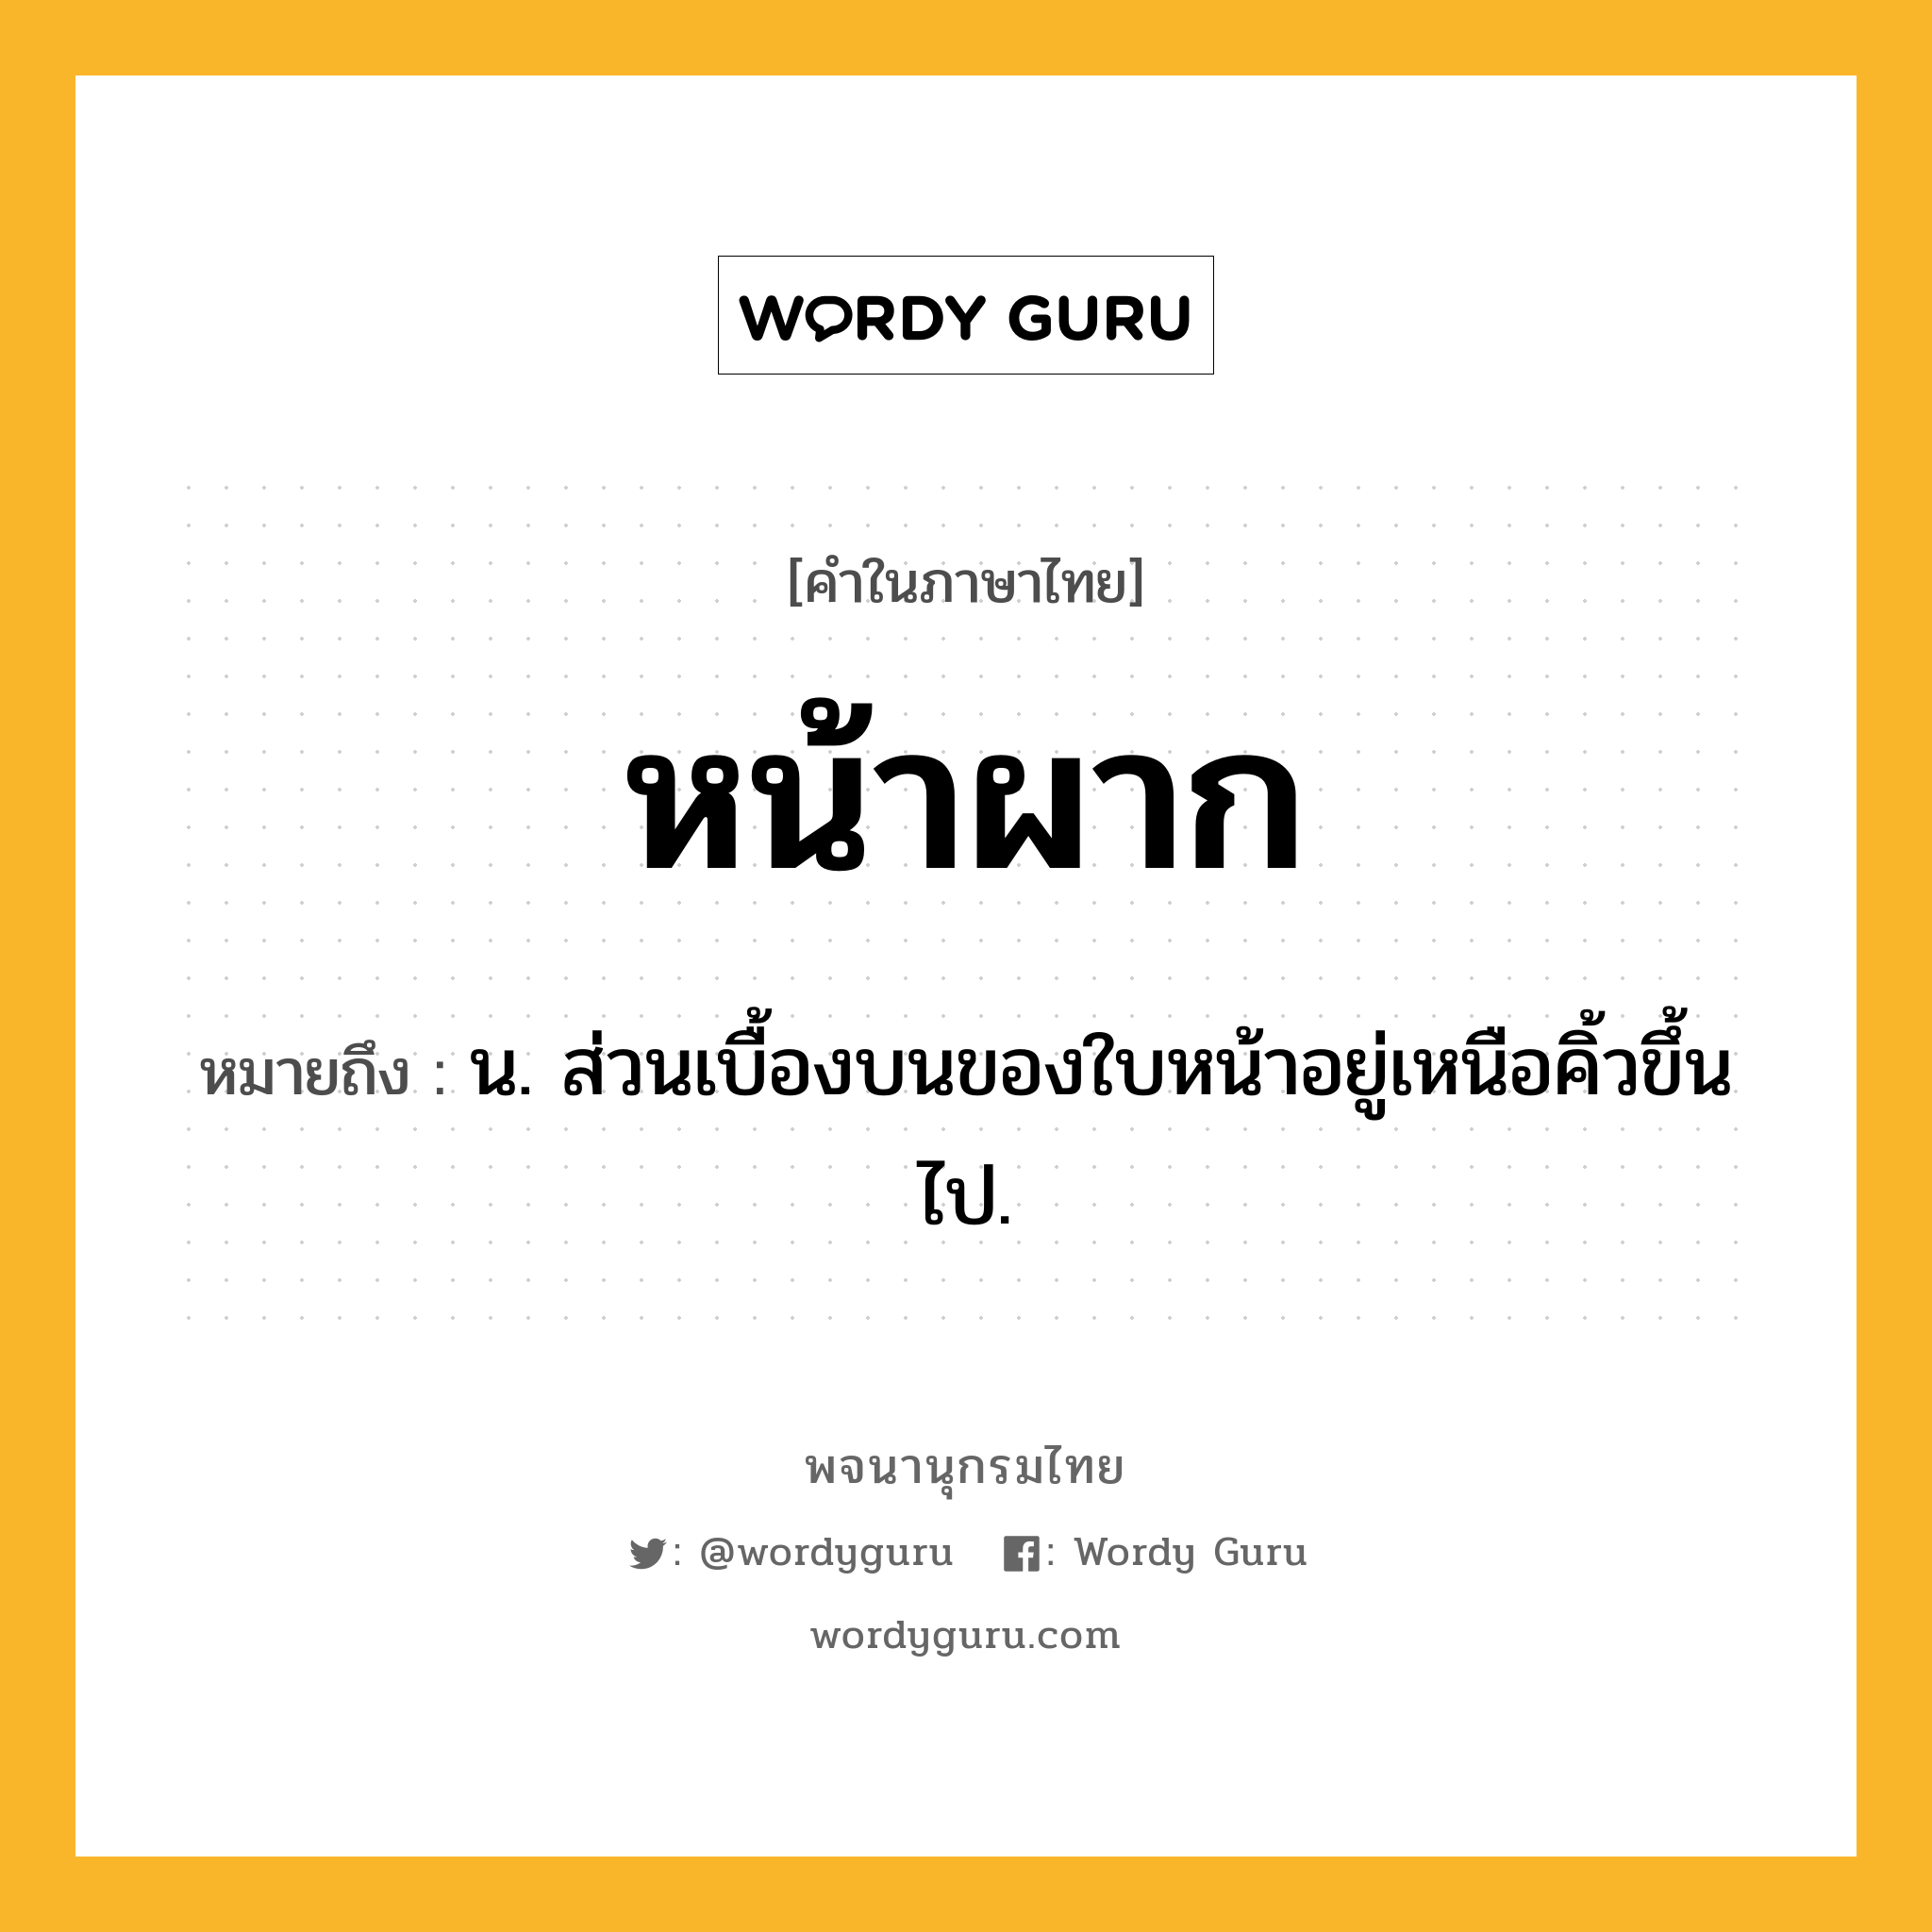 หน้าผาก ความหมาย หมายถึงอะไร?, คำในภาษาไทย หน้าผาก หมายถึง น. ส่วนเบื้องบนของใบหน้าอยู่เหนือคิ้วขึ้นไป.